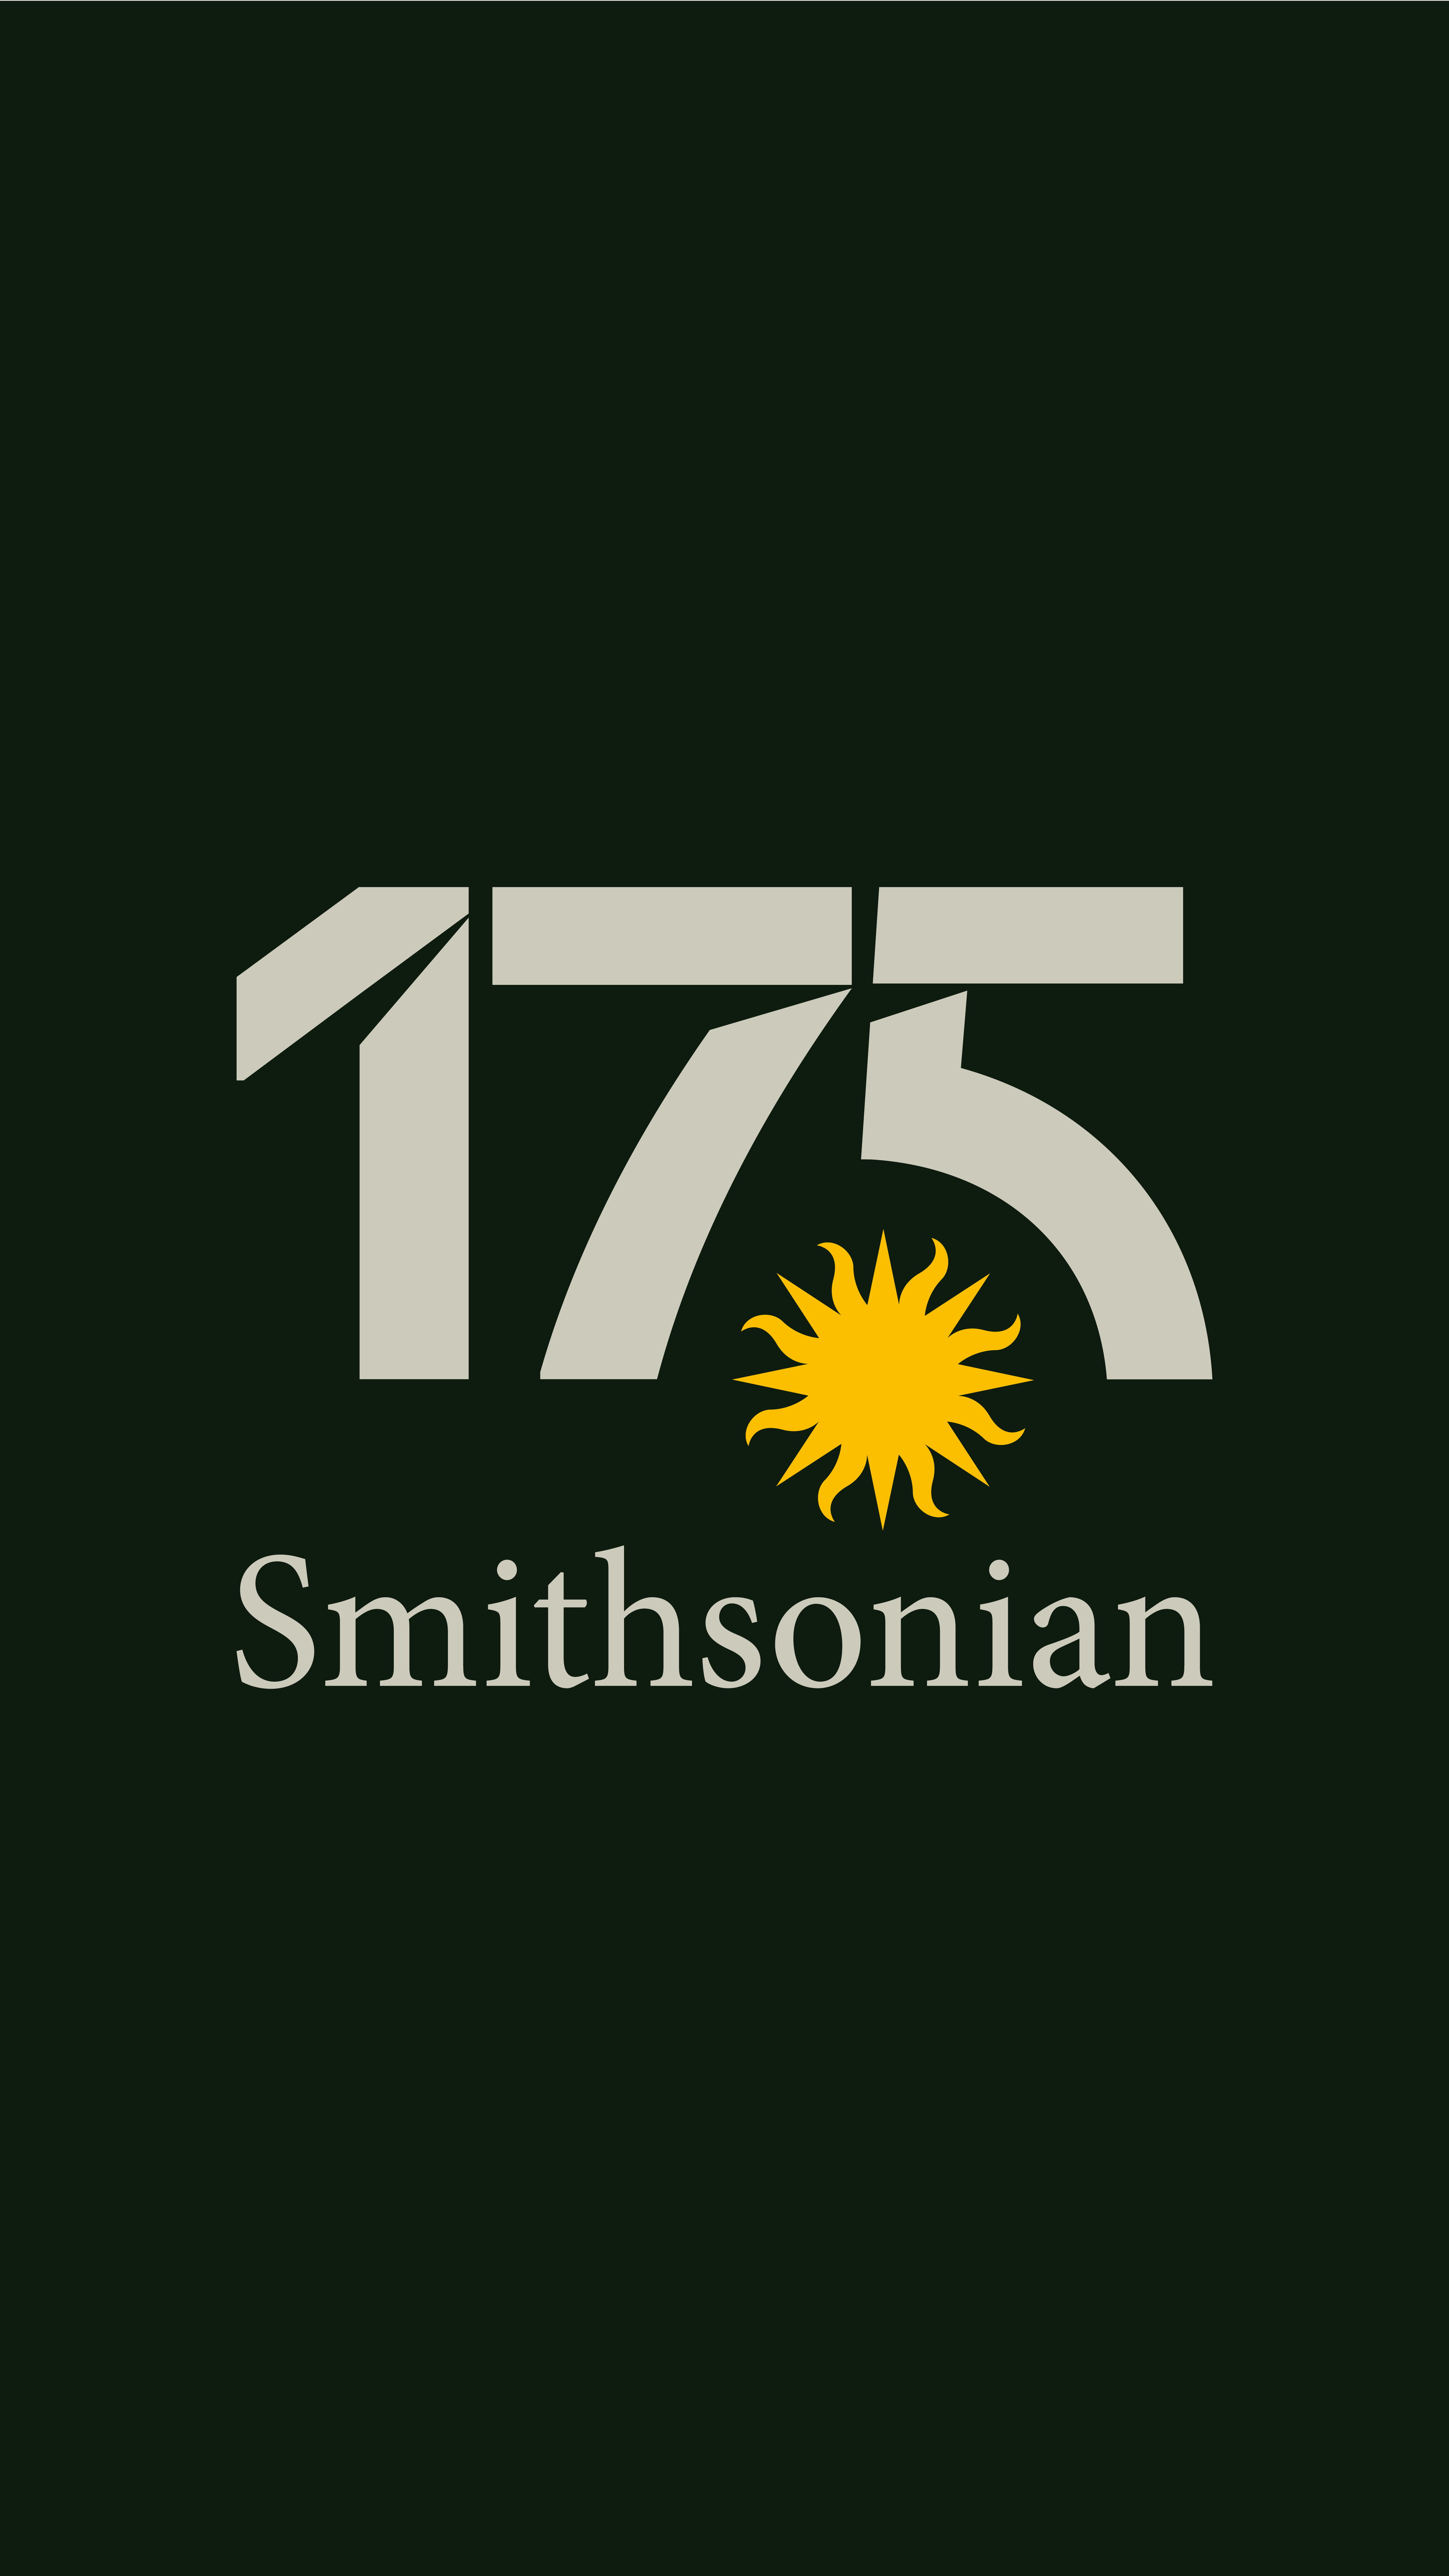 si175-logo-variations-03